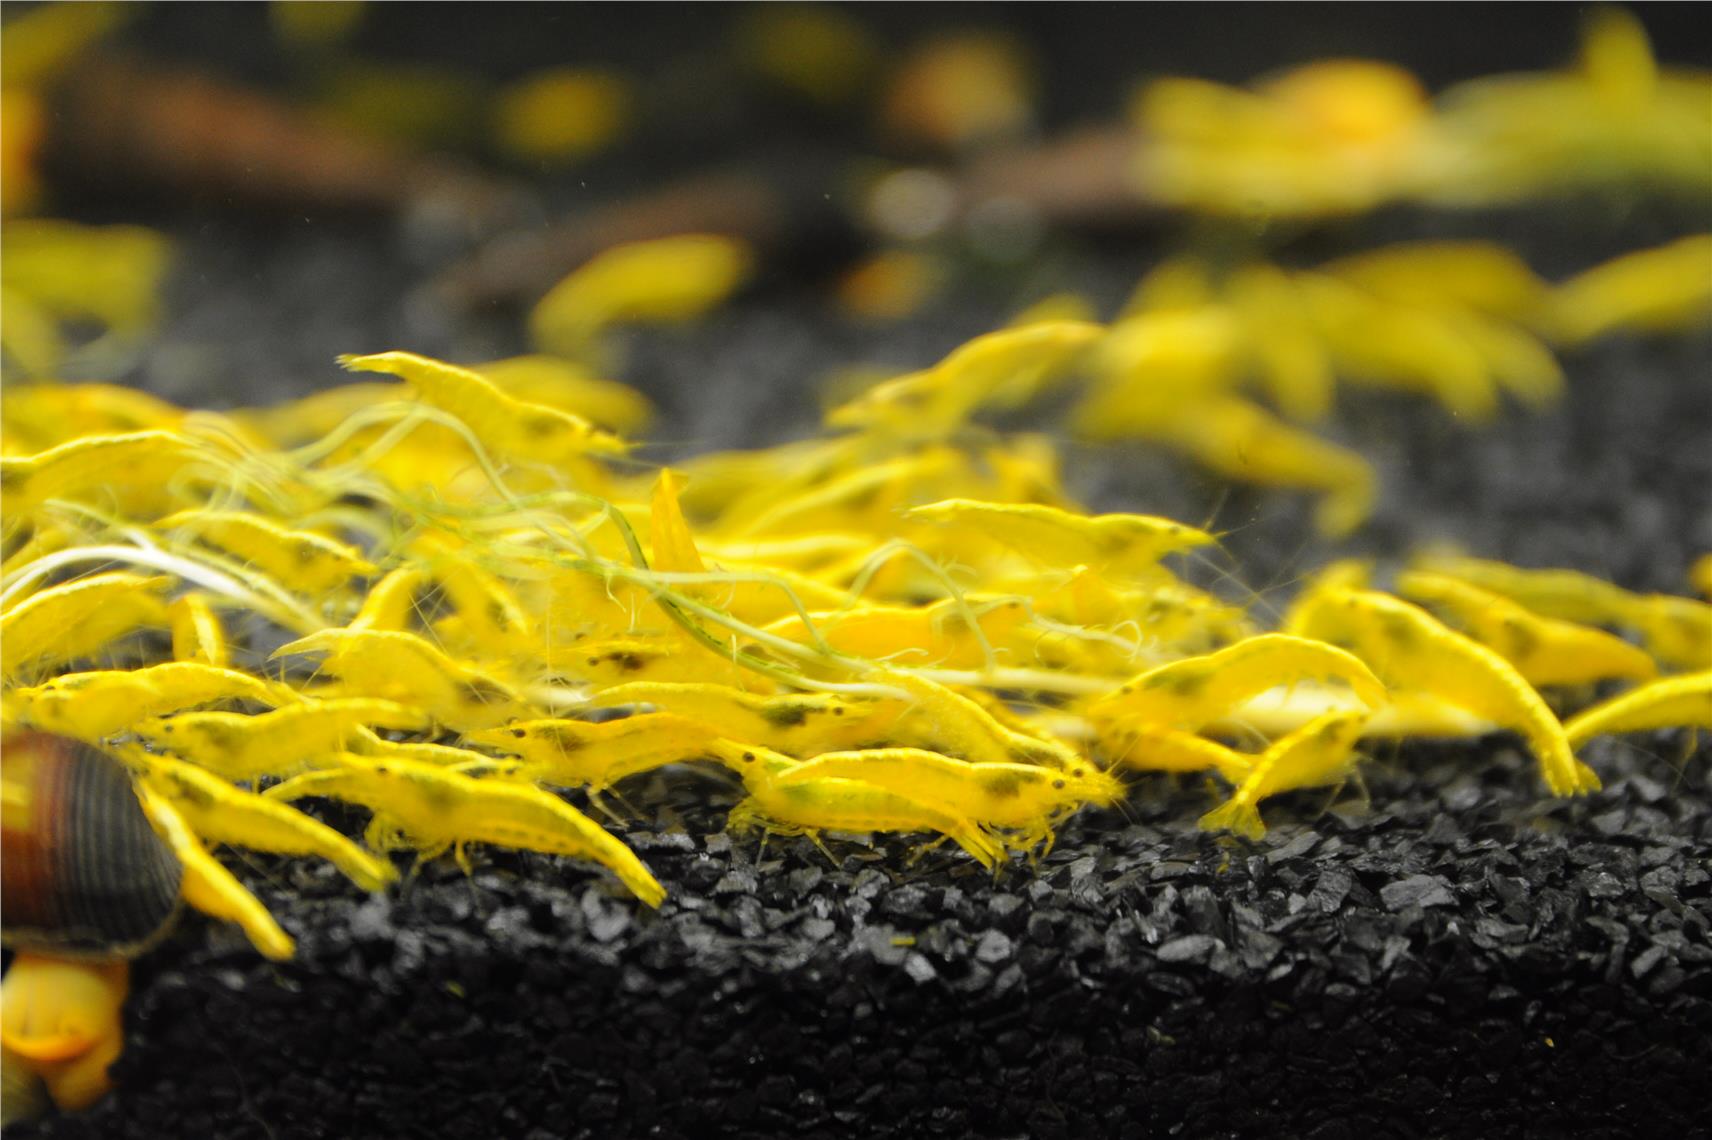 Neocaridina davidi – sladkovodna kozica / Cherry Shrimp - Yellow Golden Top Fire